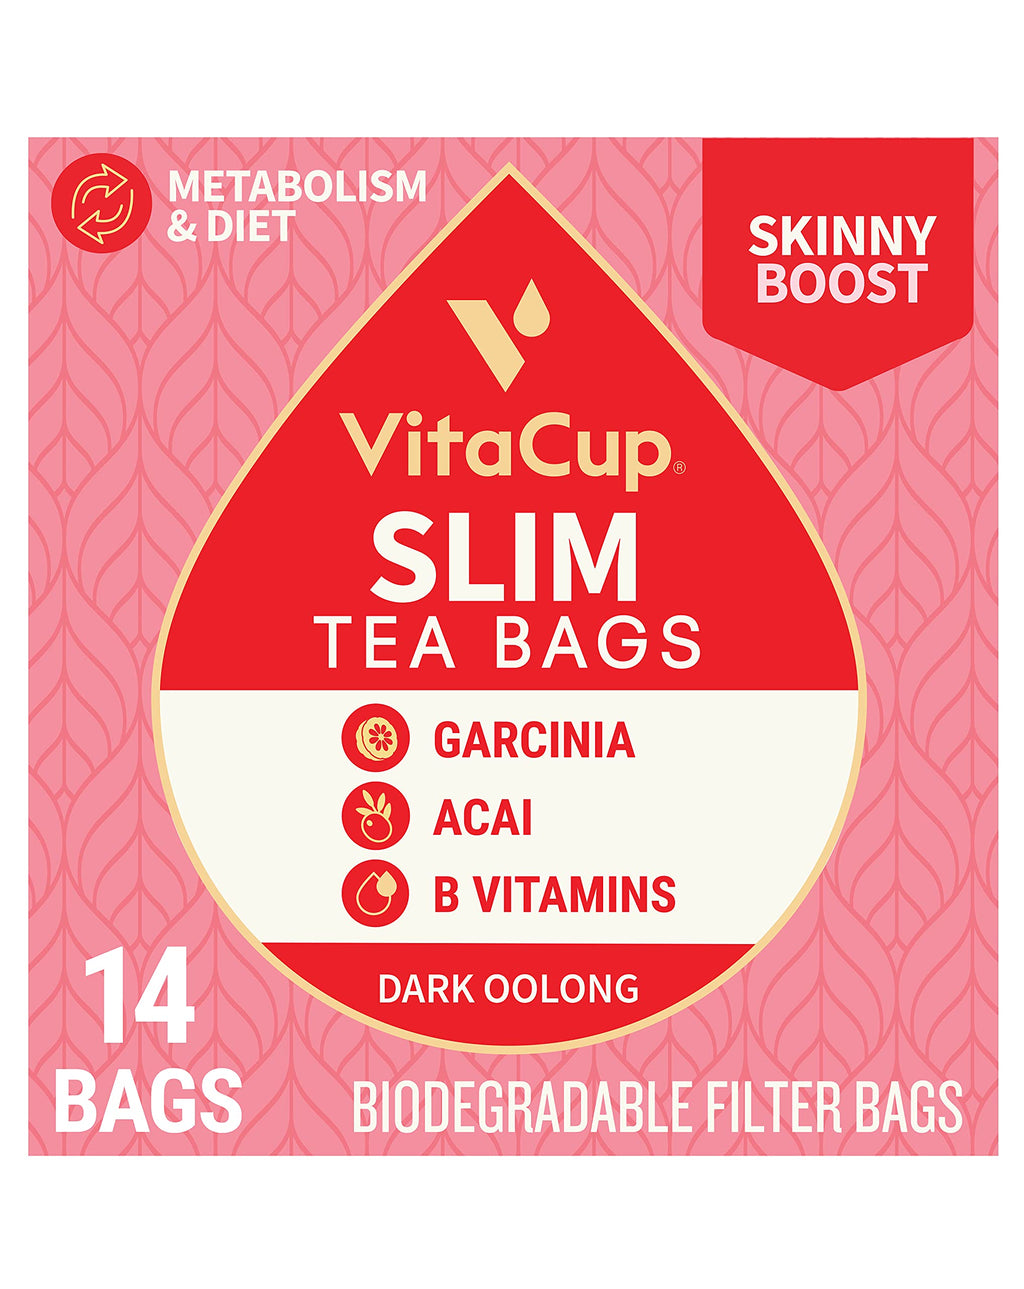 Slim Tea Bags by VitaCup for Skinny Diet, Metabolism, & Detox, Oolong Tea with Acai Berry, Garcinia, B Vitamins in a Single Serve Tea Sachet Bag, 14 CT Slim 14 Count (Pack of 1)